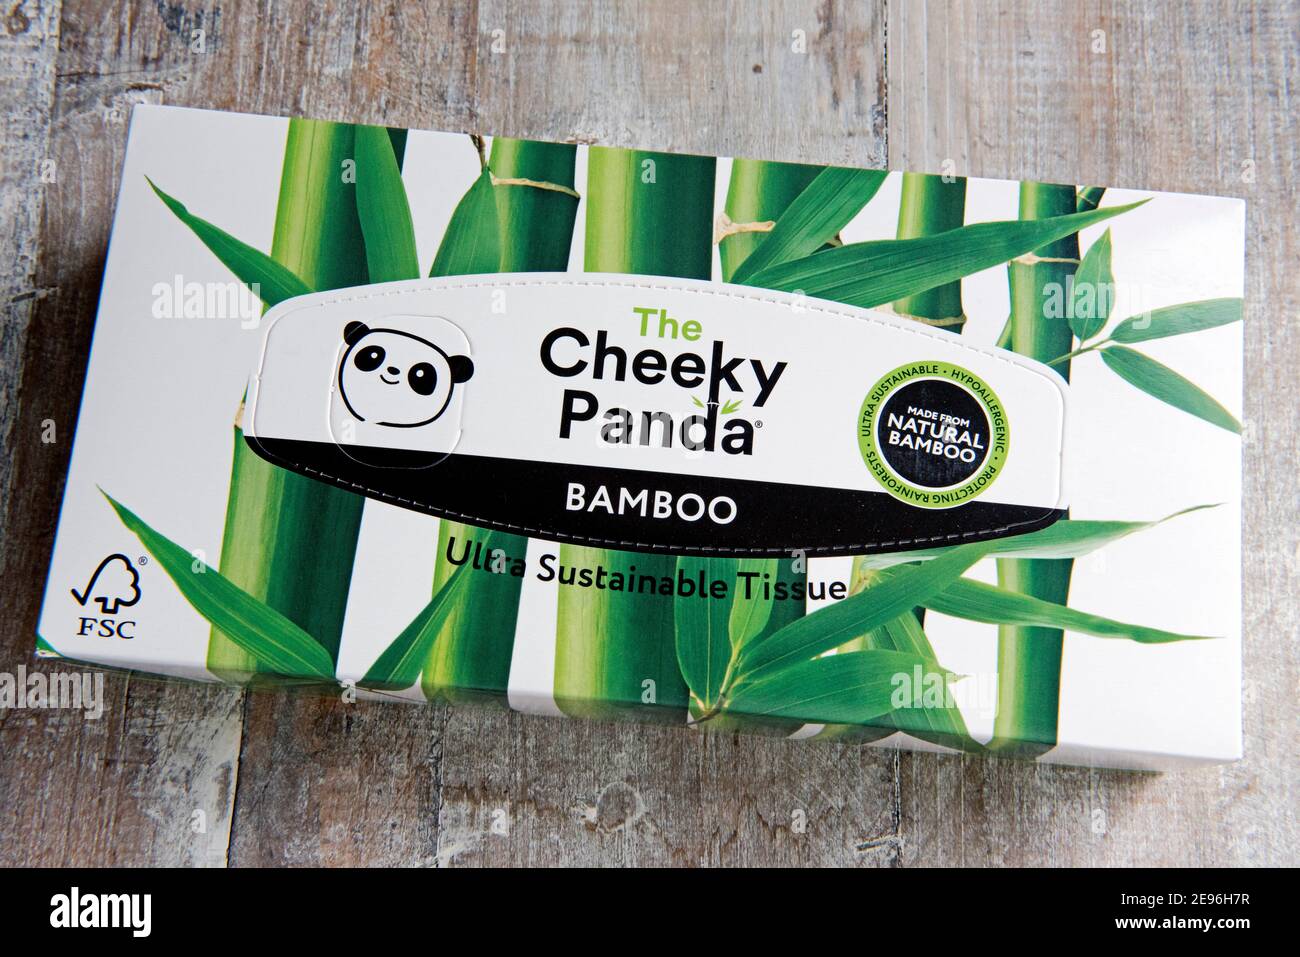 Boîte de tissus ou de tissus Cheeky Panda fabriqués à partir de Bambou naturel ultra durable sur fond de bois incliné Banque D'Images